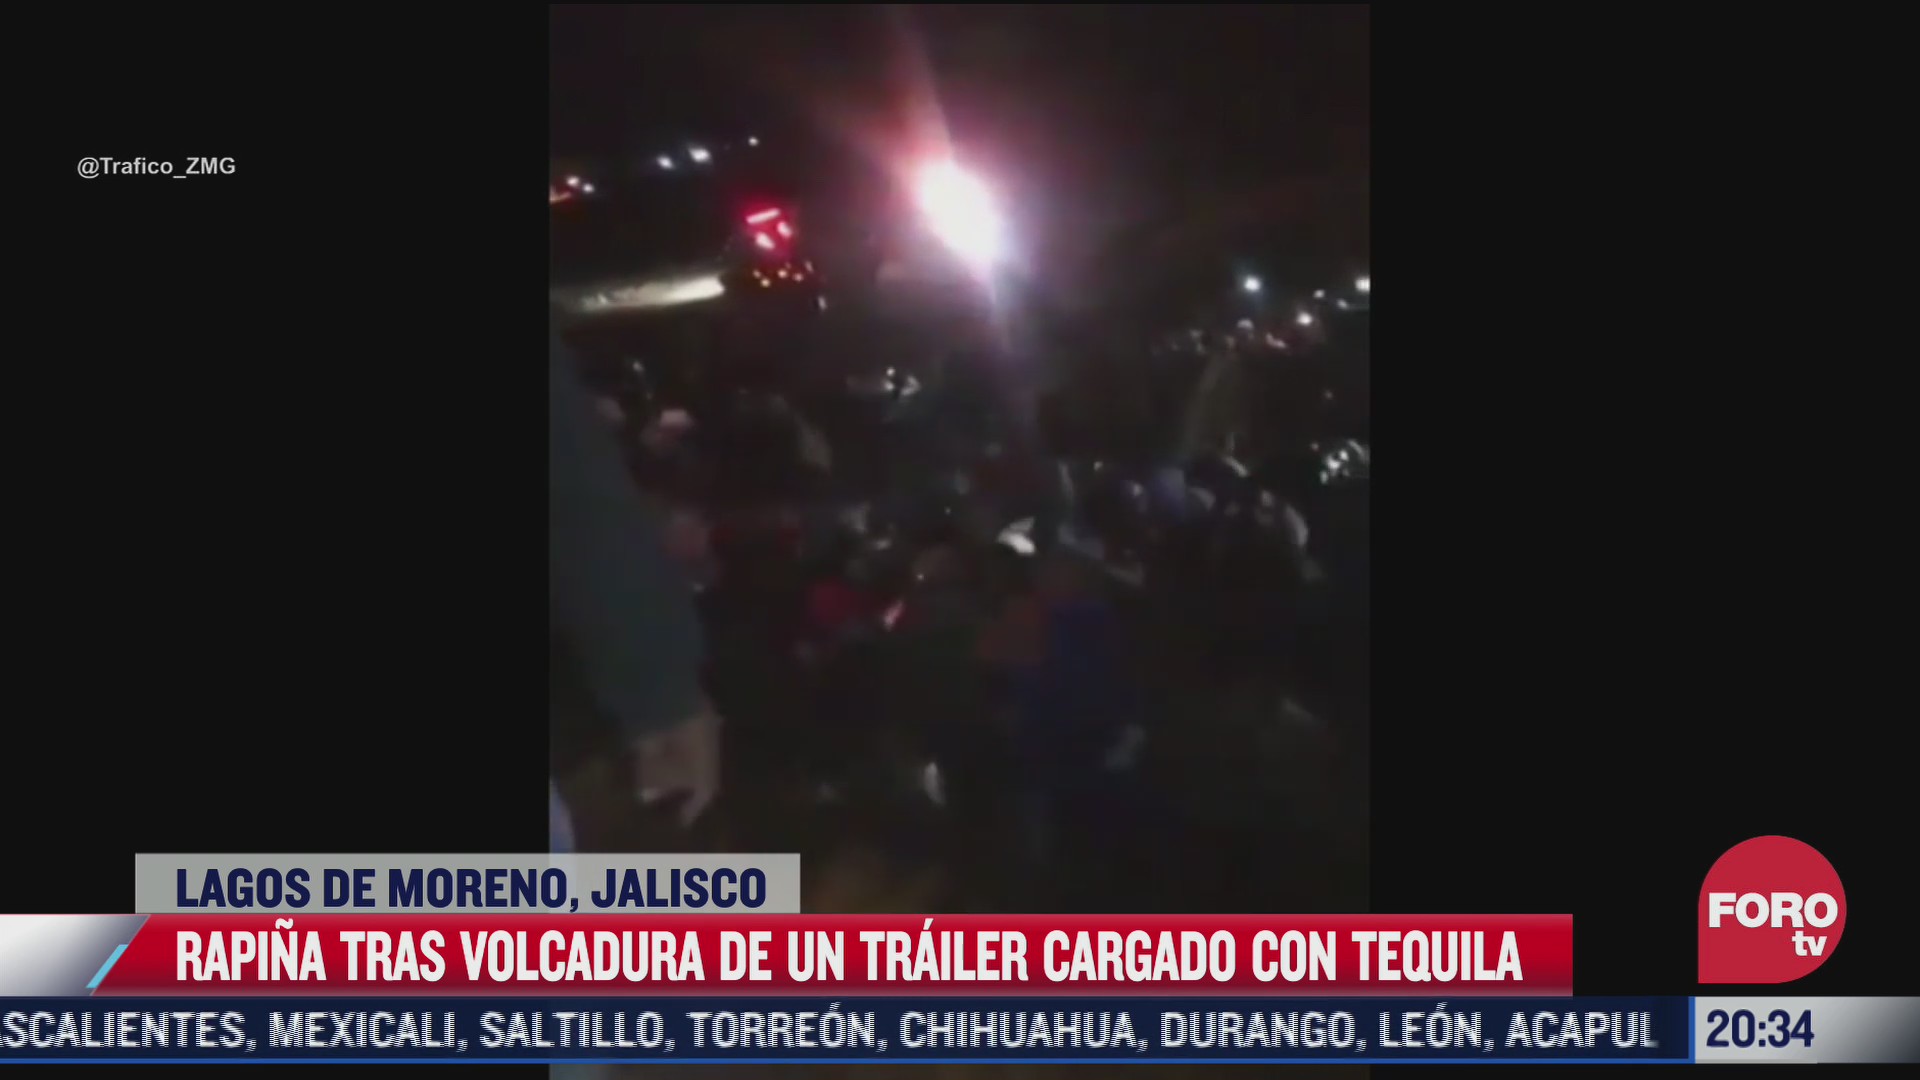 rapina en jalisco tras volcadura de trailer cargado con tequila